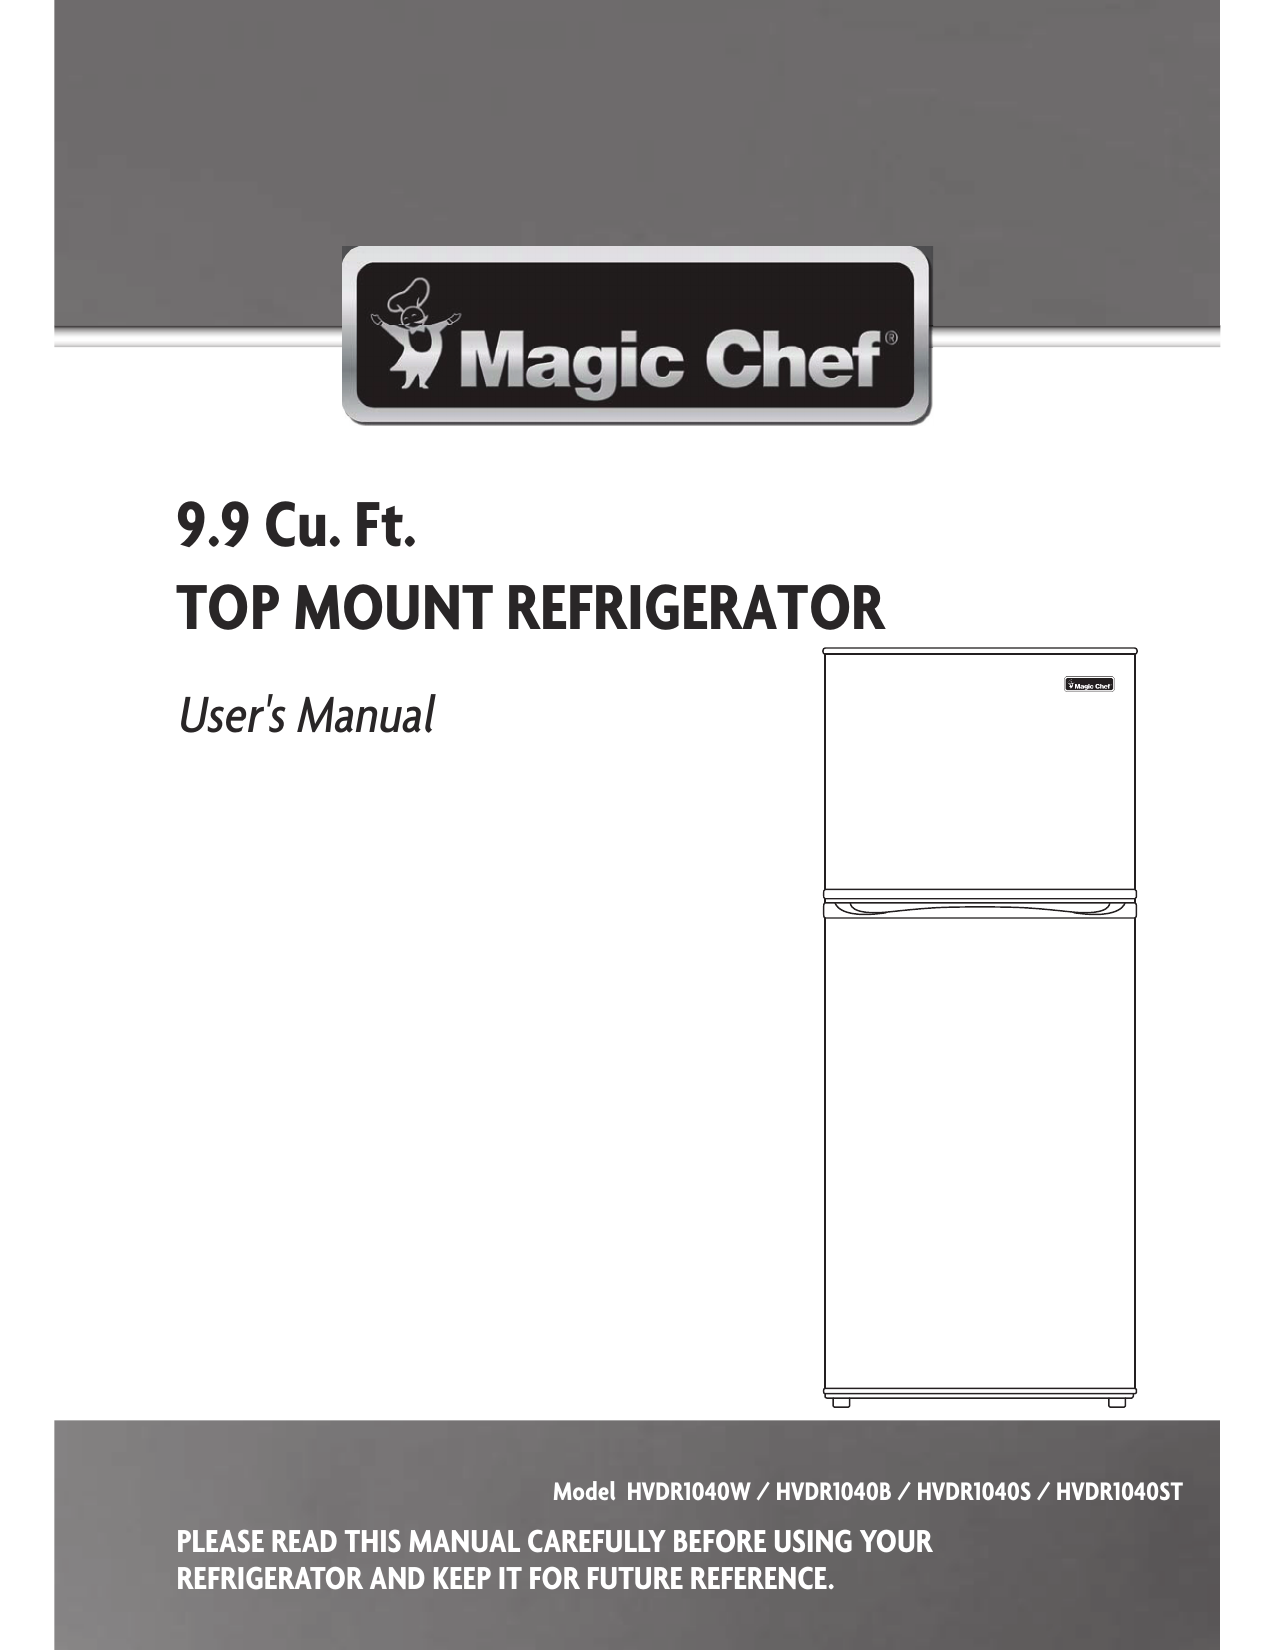 solución de problemas de magic chef